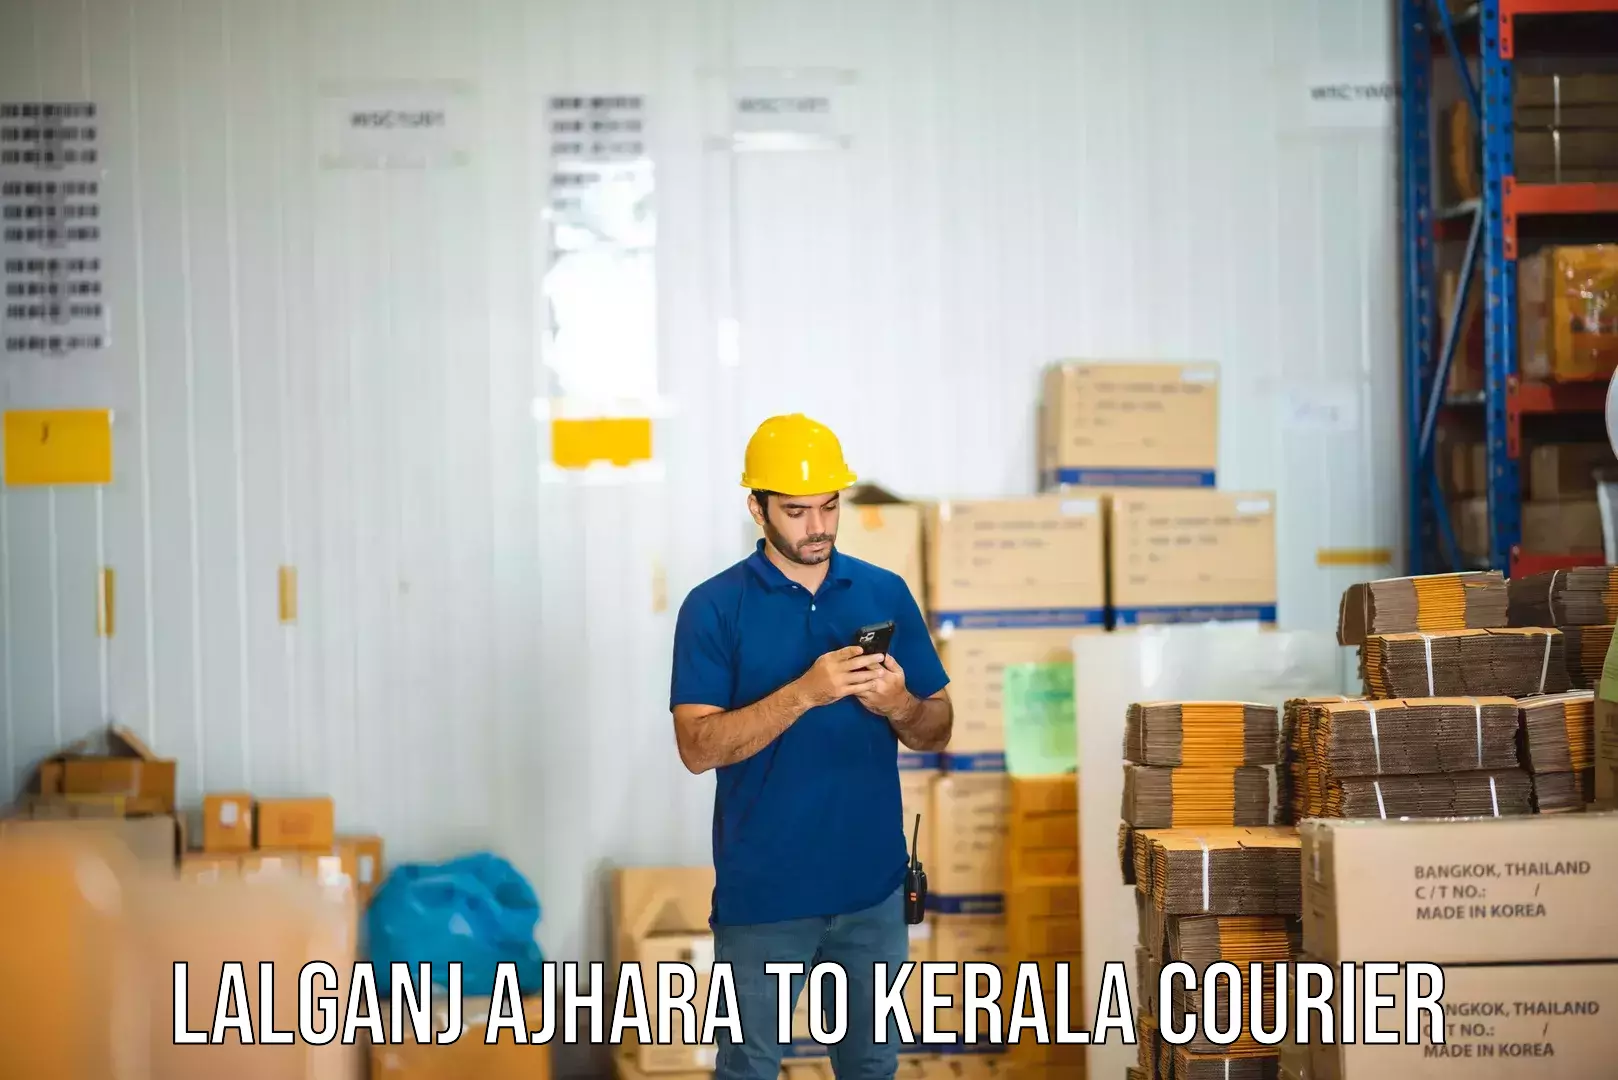 Expedited shipping solutions Lalganj Ajhara to Kerala